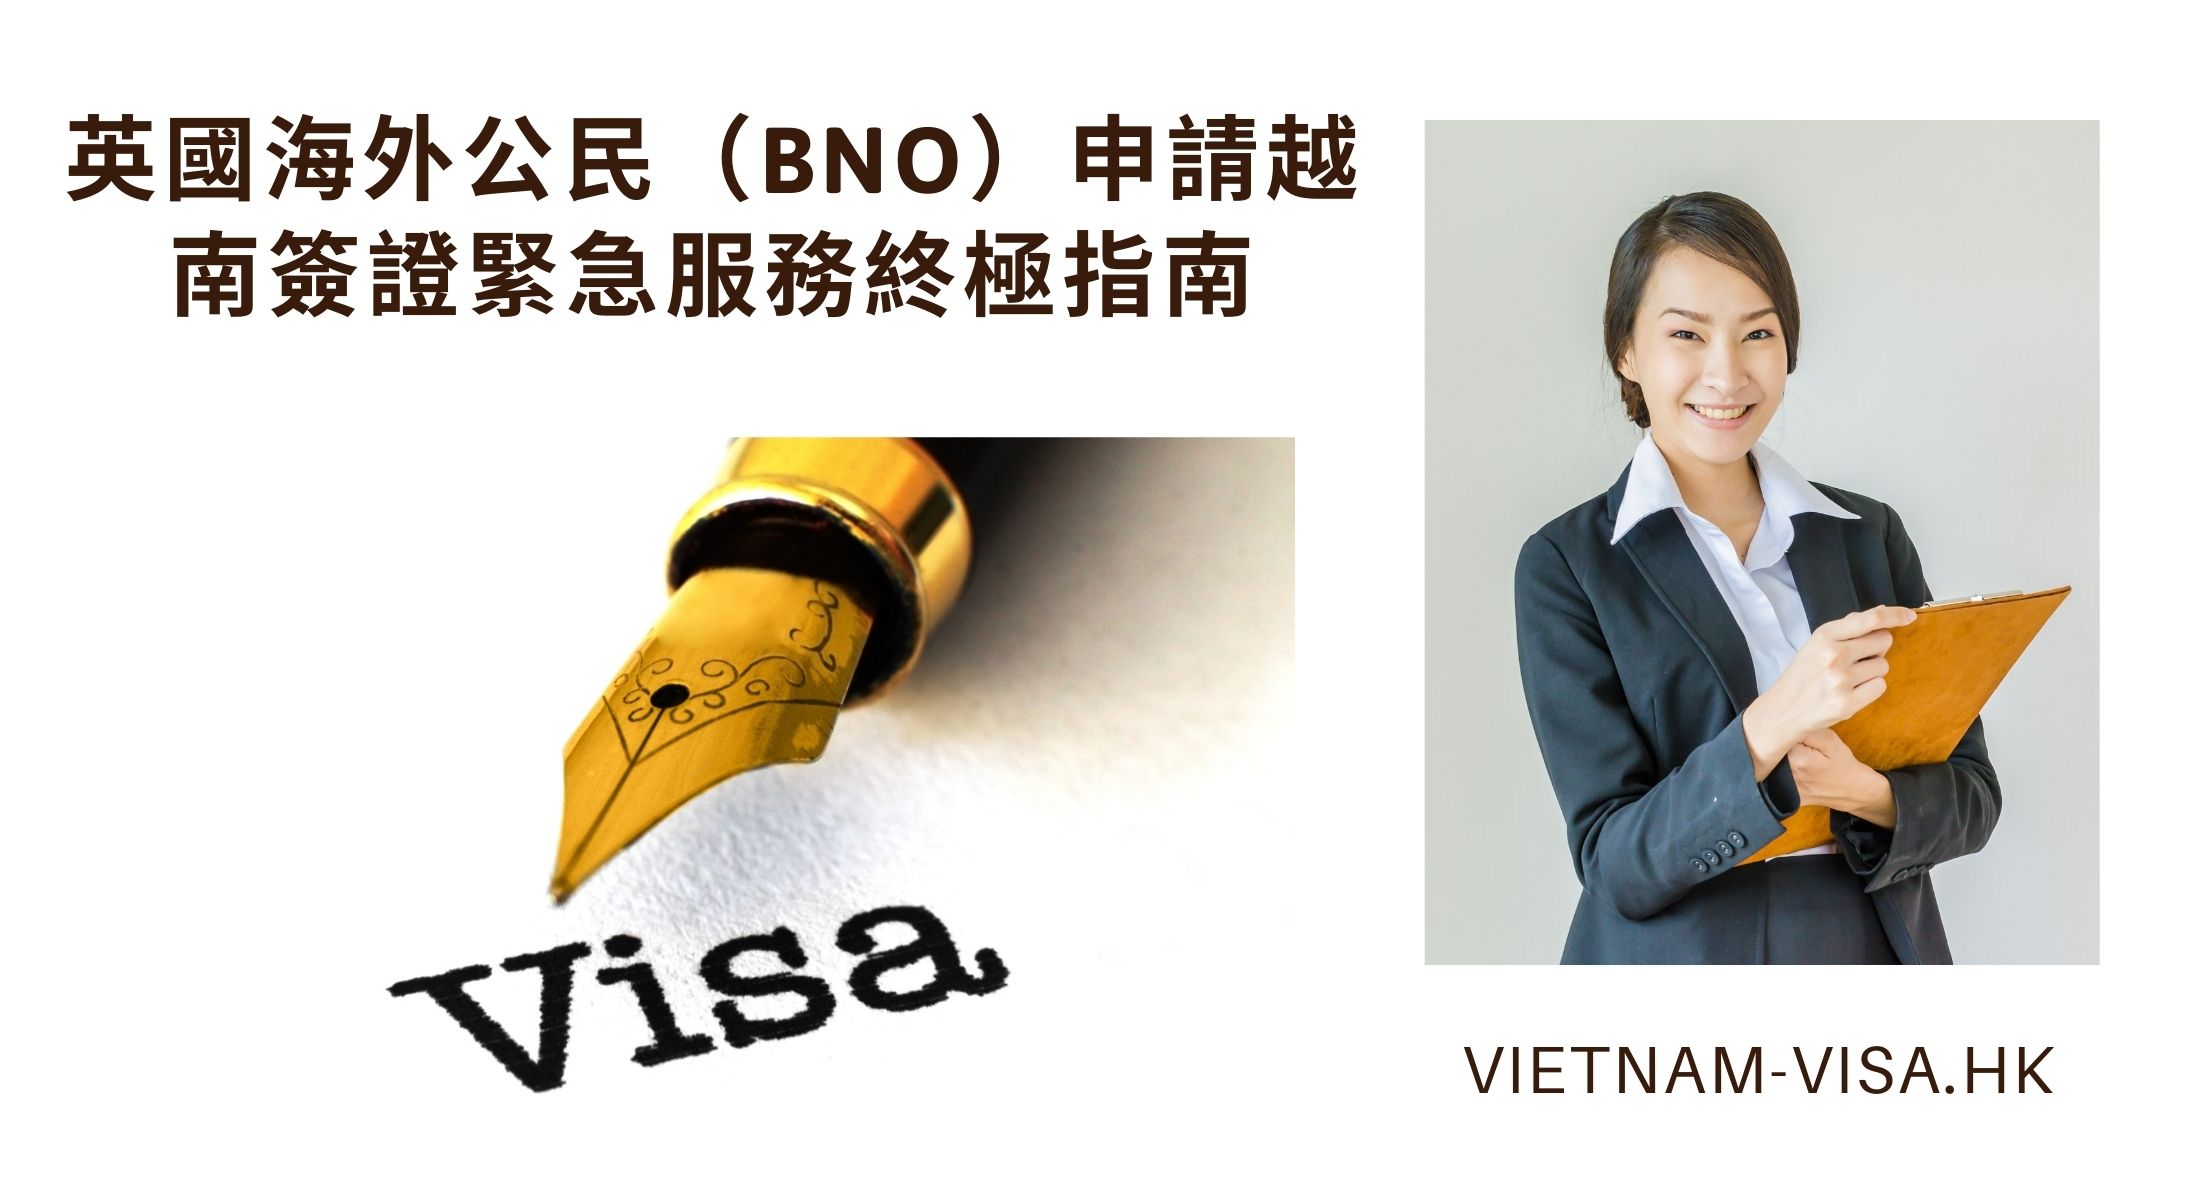 英國海外公民（BNO）申請越南簽證緊急服務終極指南